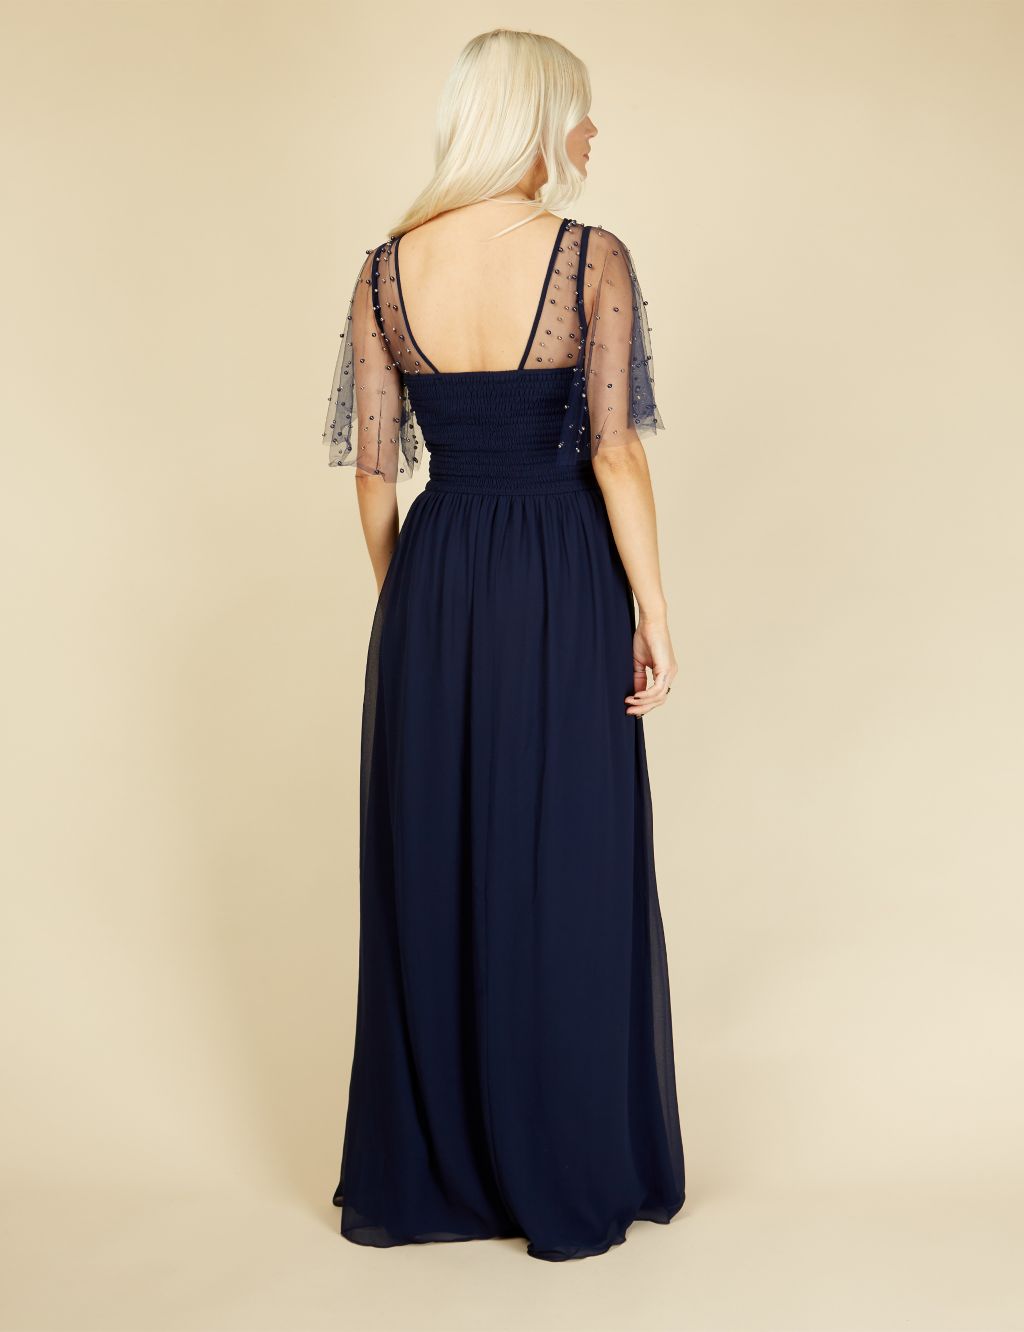 Embellished Angel Sleeve Maxi Waisted Dress image 4